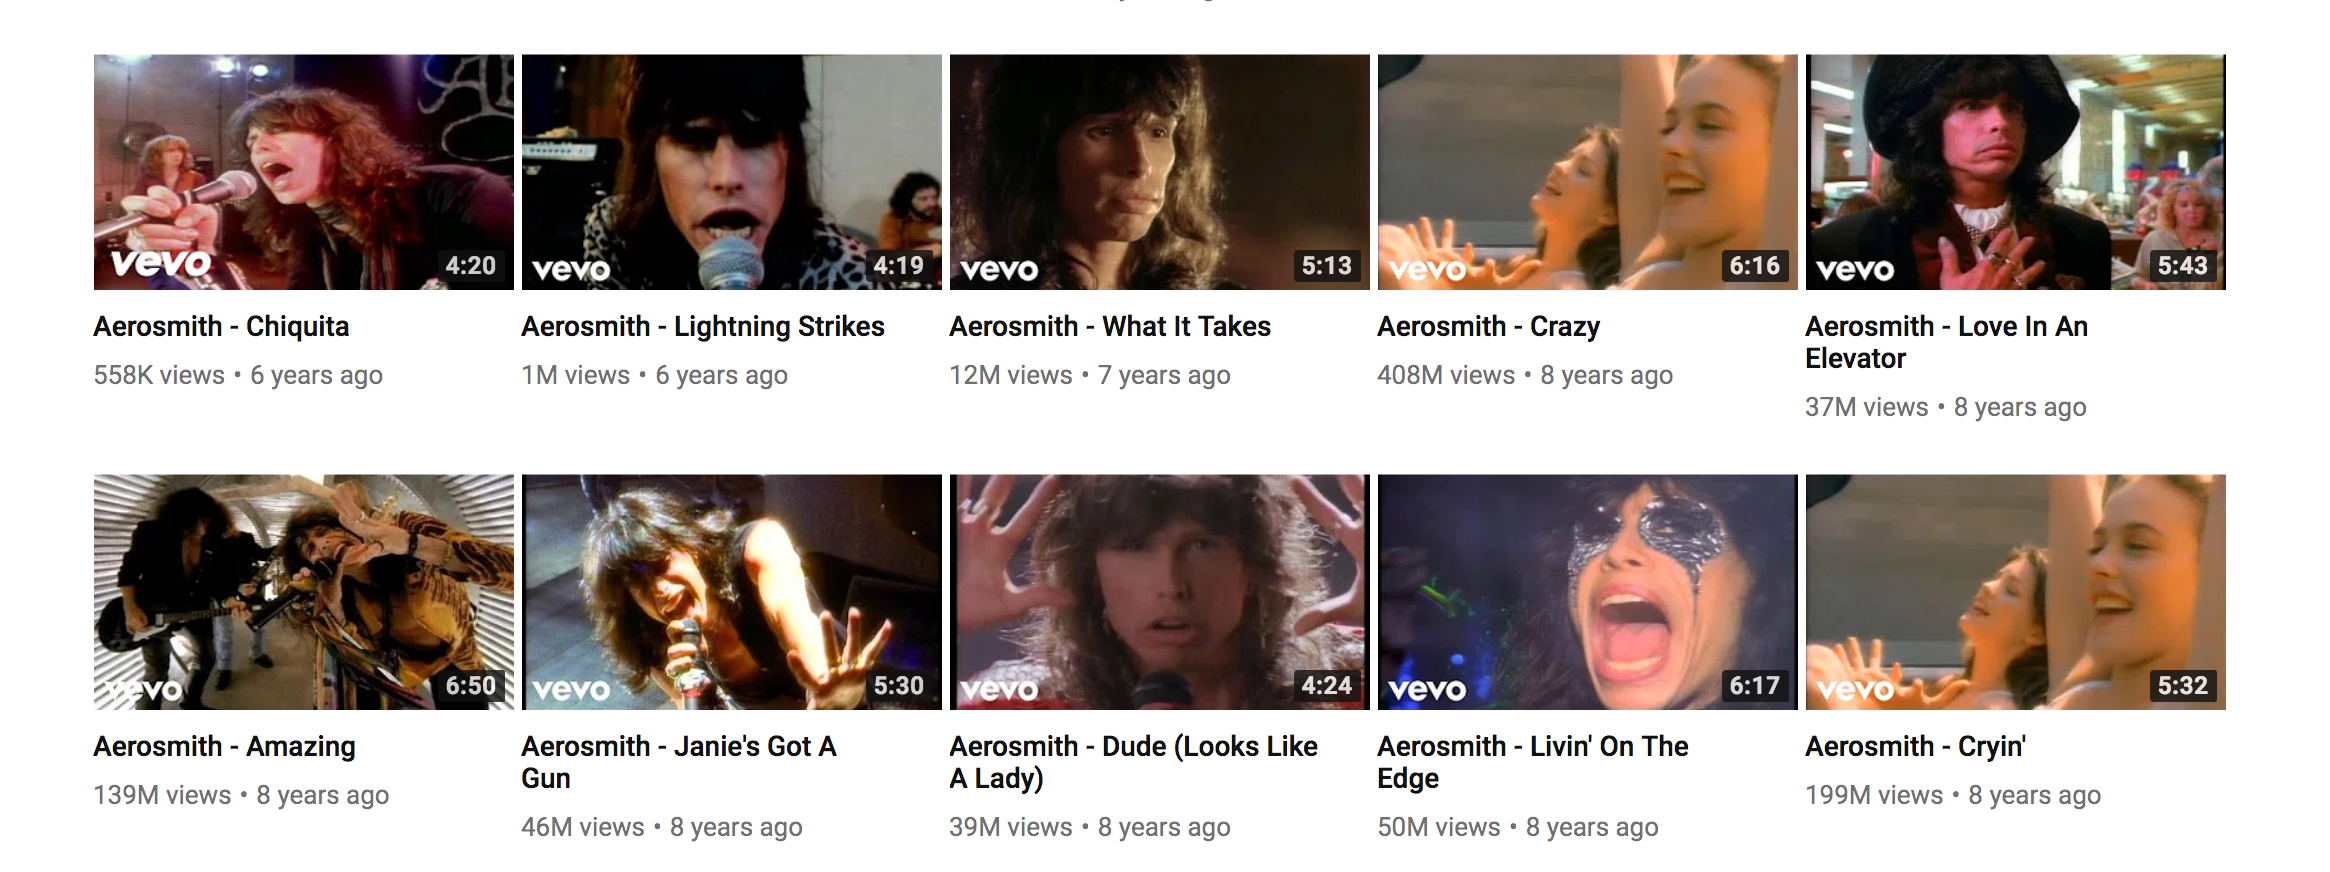 Aerosmith - Crazy  Music videos vevo, Aerosmith, Good music